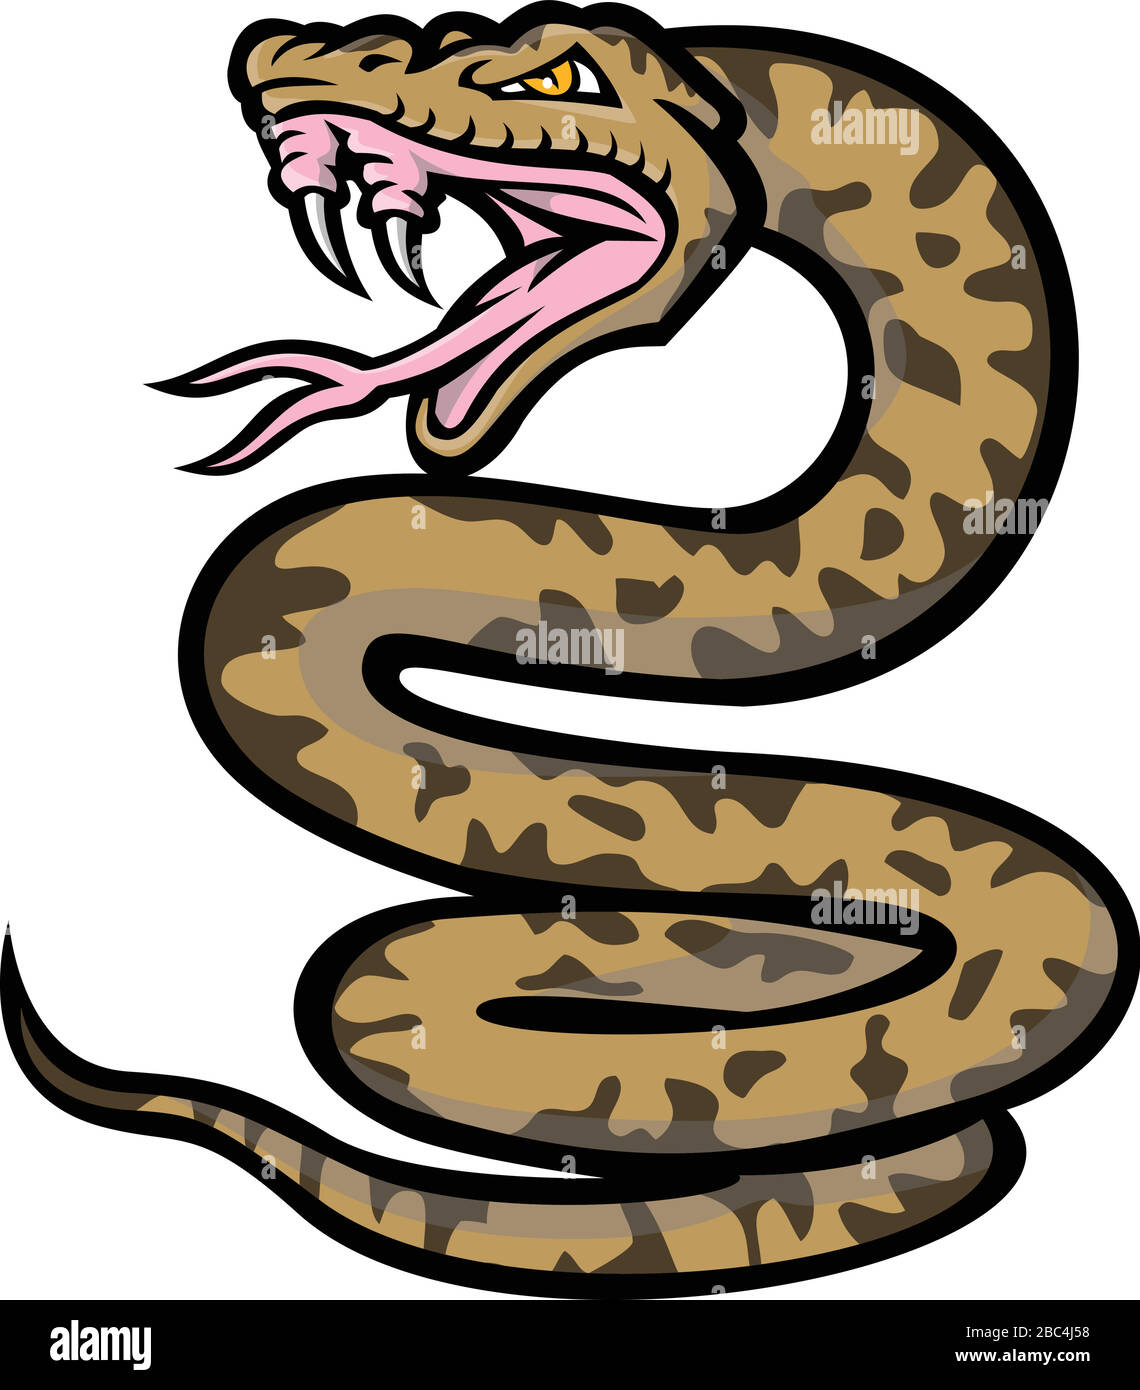 Icône mascotte illustration d'un serpent agressif de habu, d'Okinawa habu ou de Kume Shima habu, une espèce de vipère venimeux endémique au Japon, barant ainsi son f Illustration de Vecteur